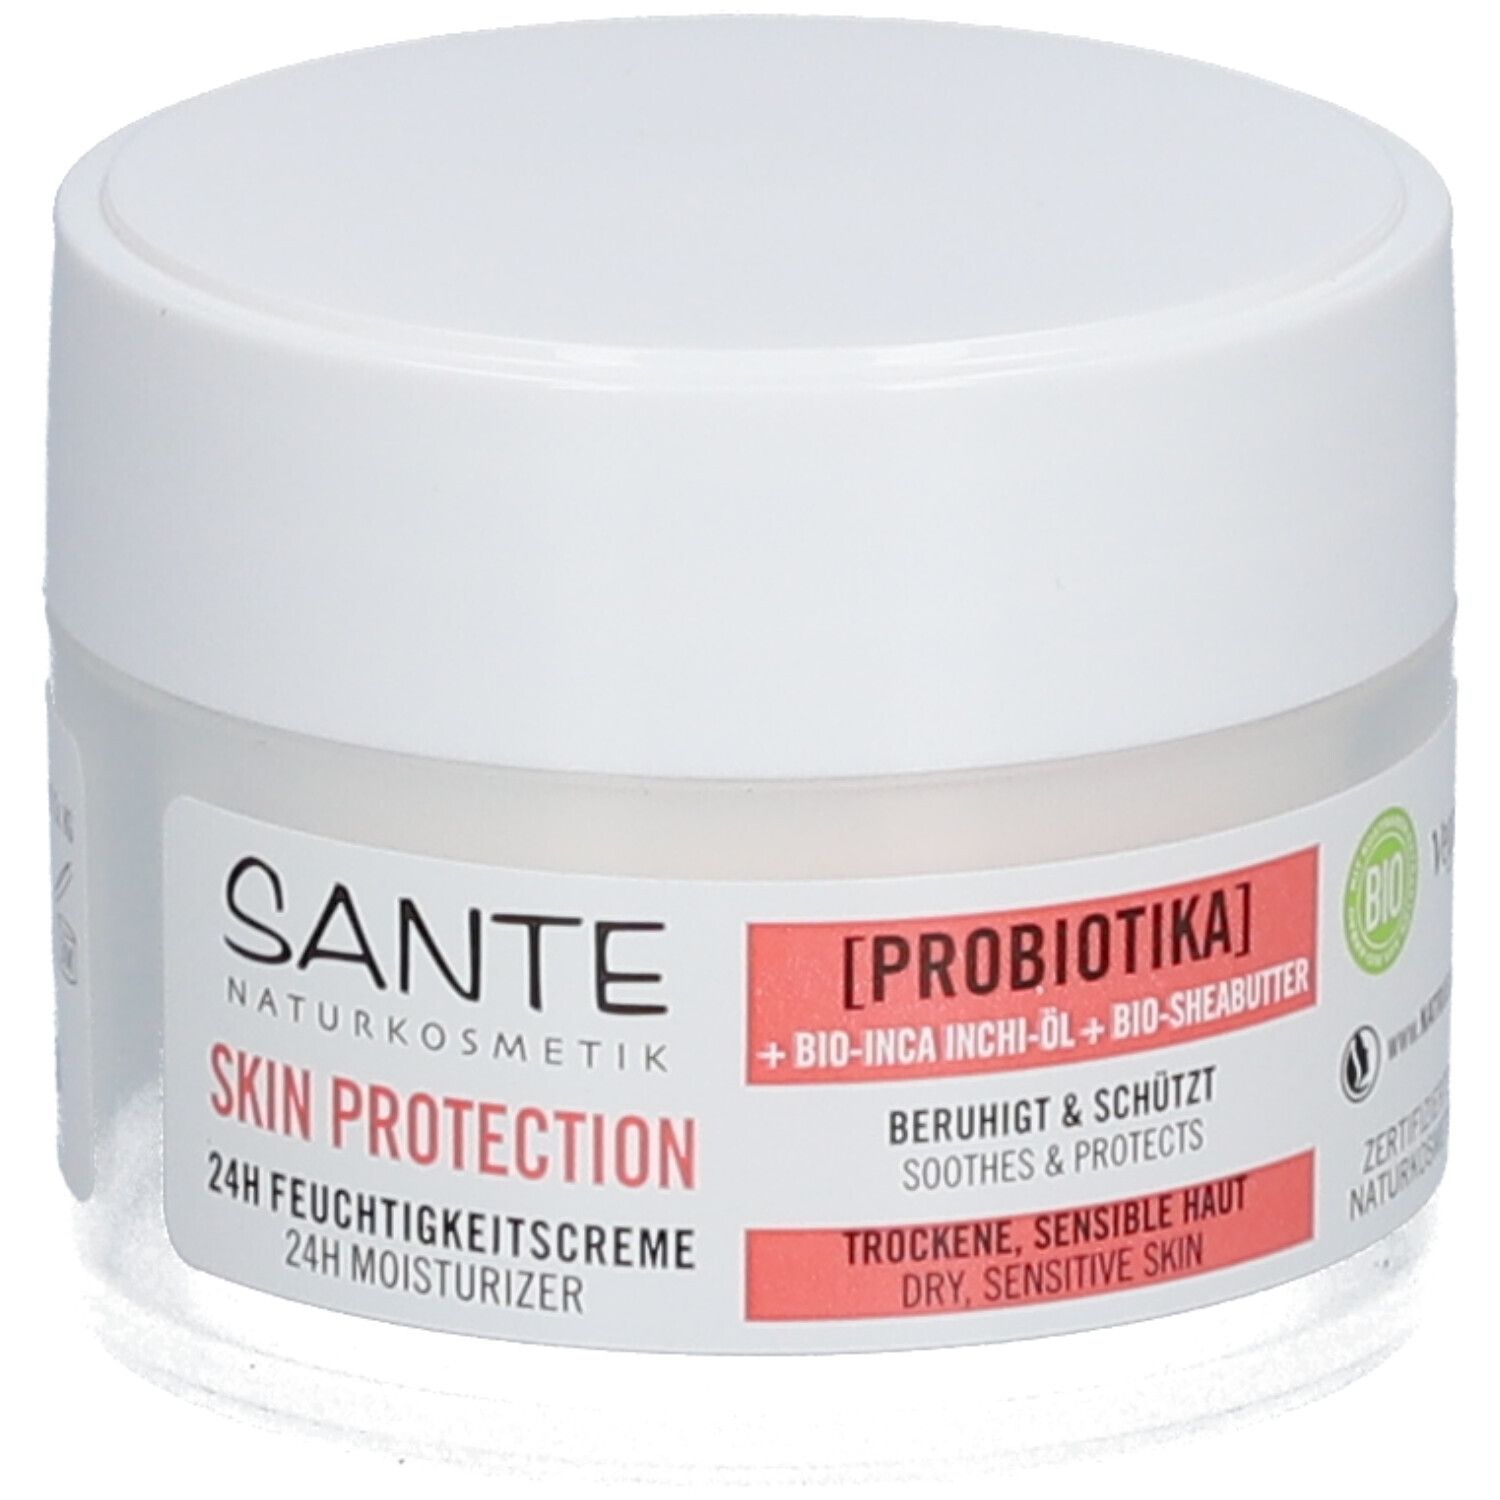 Sante Naturkosmetik Skin Protection 24h Feuchtigkeitscreme